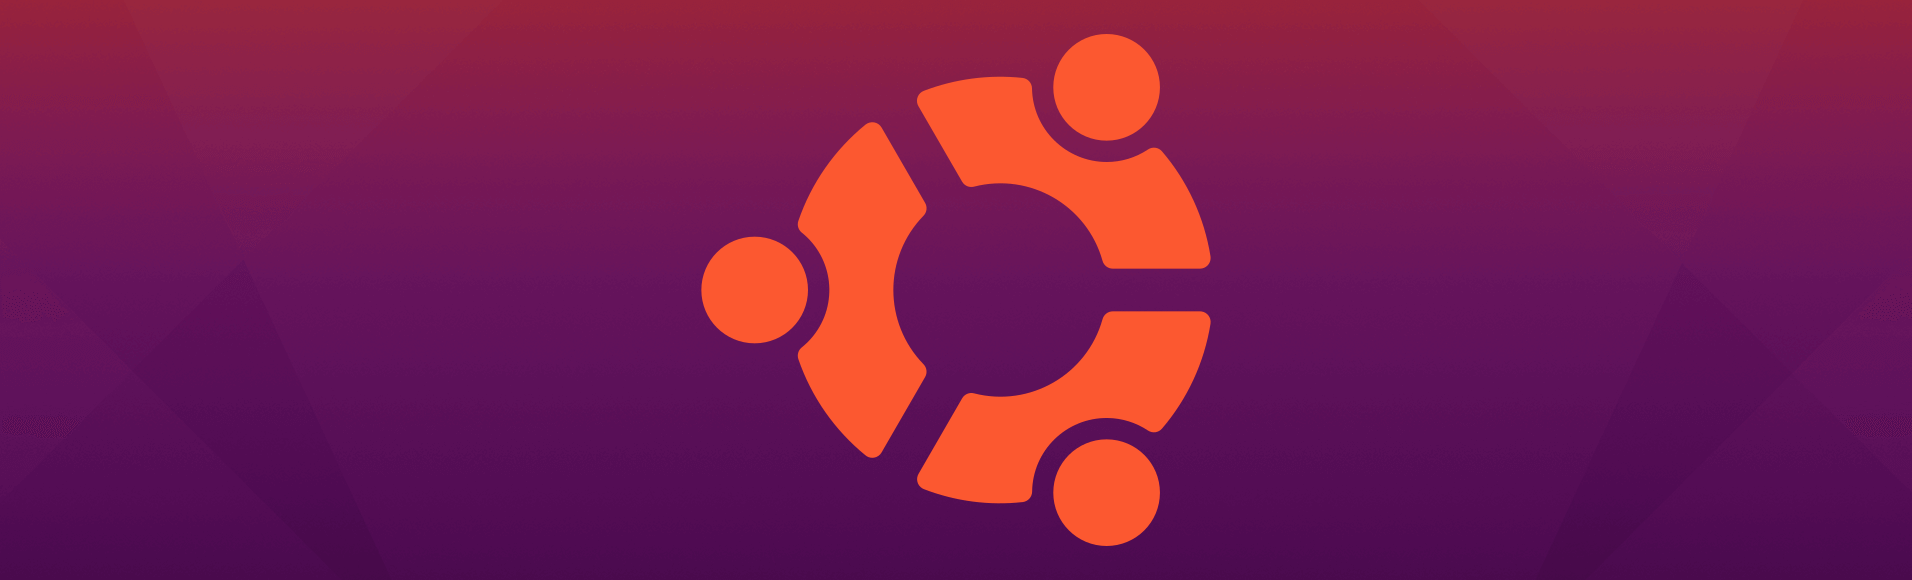 How to install vfxAlert on Ubuntu